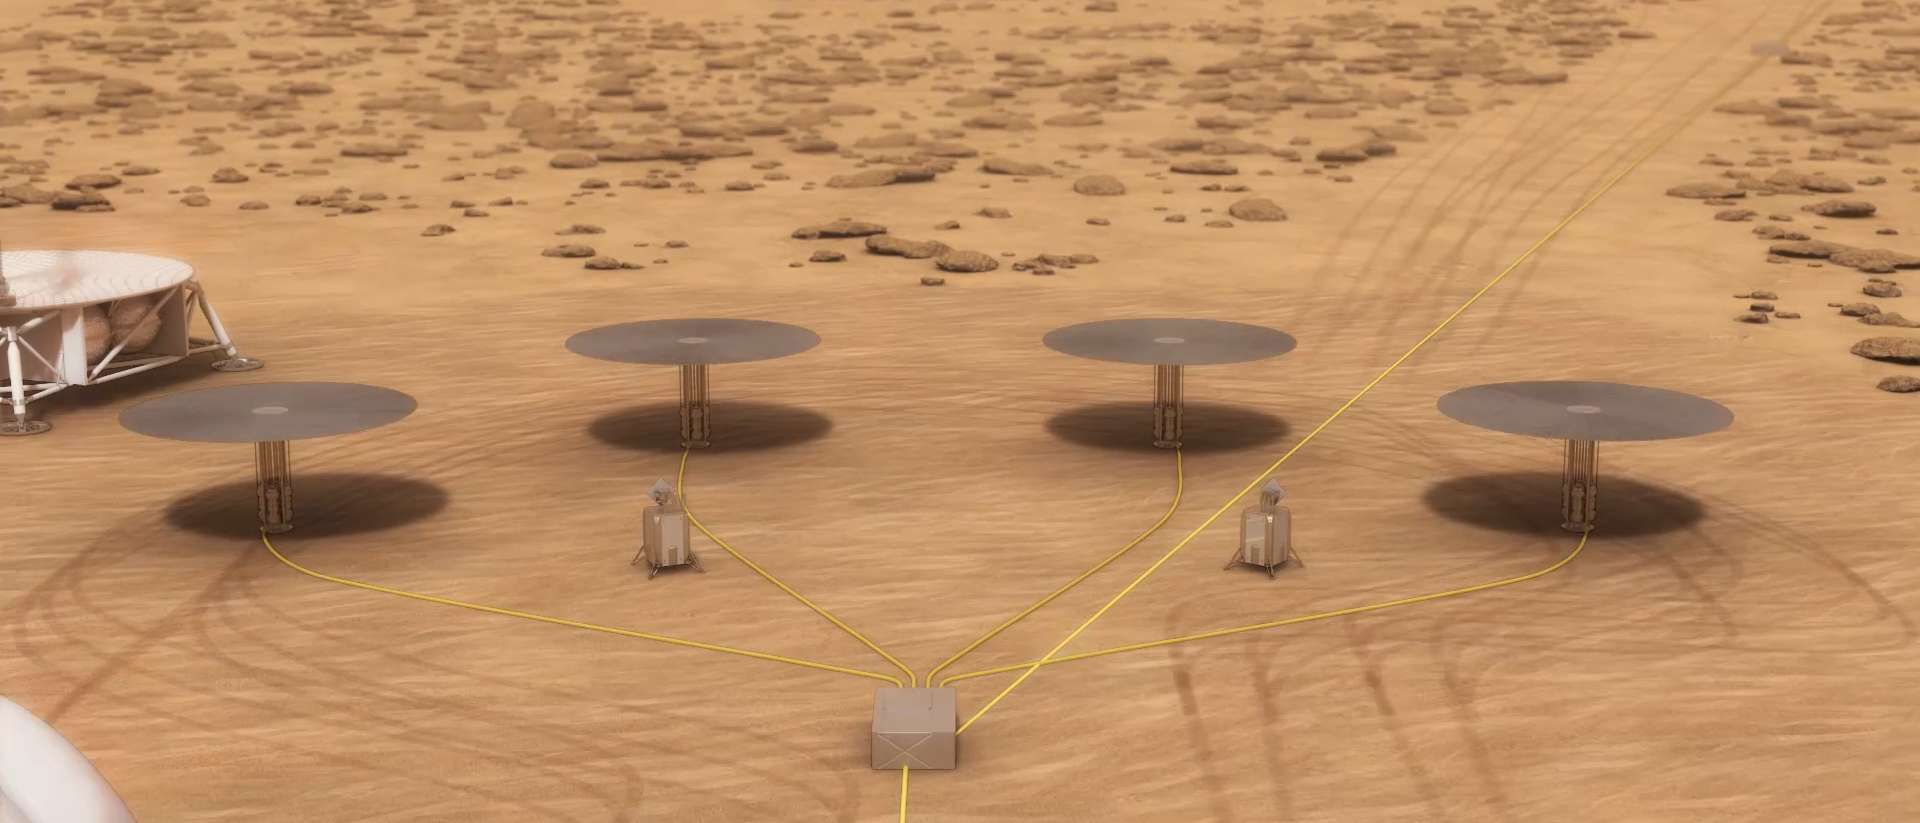 Mini-Kernreaktoren auf dem Mars